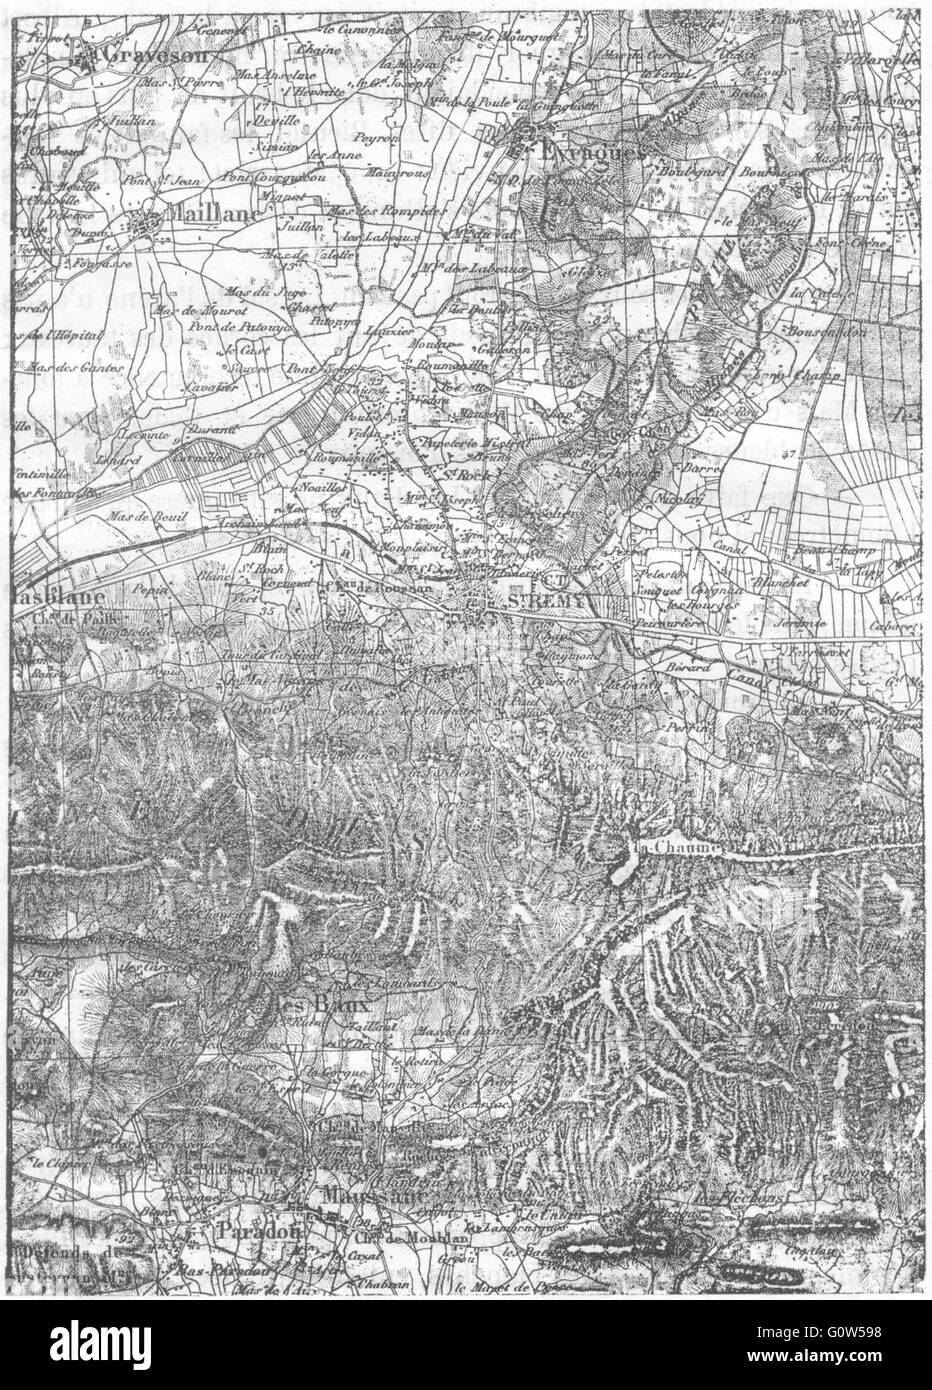 VAUCLUSE: Avignon: Maillane, St-Remy, Baux, d'apres l ' Etat-Major, Skizze Karte 1880 Stockfoto